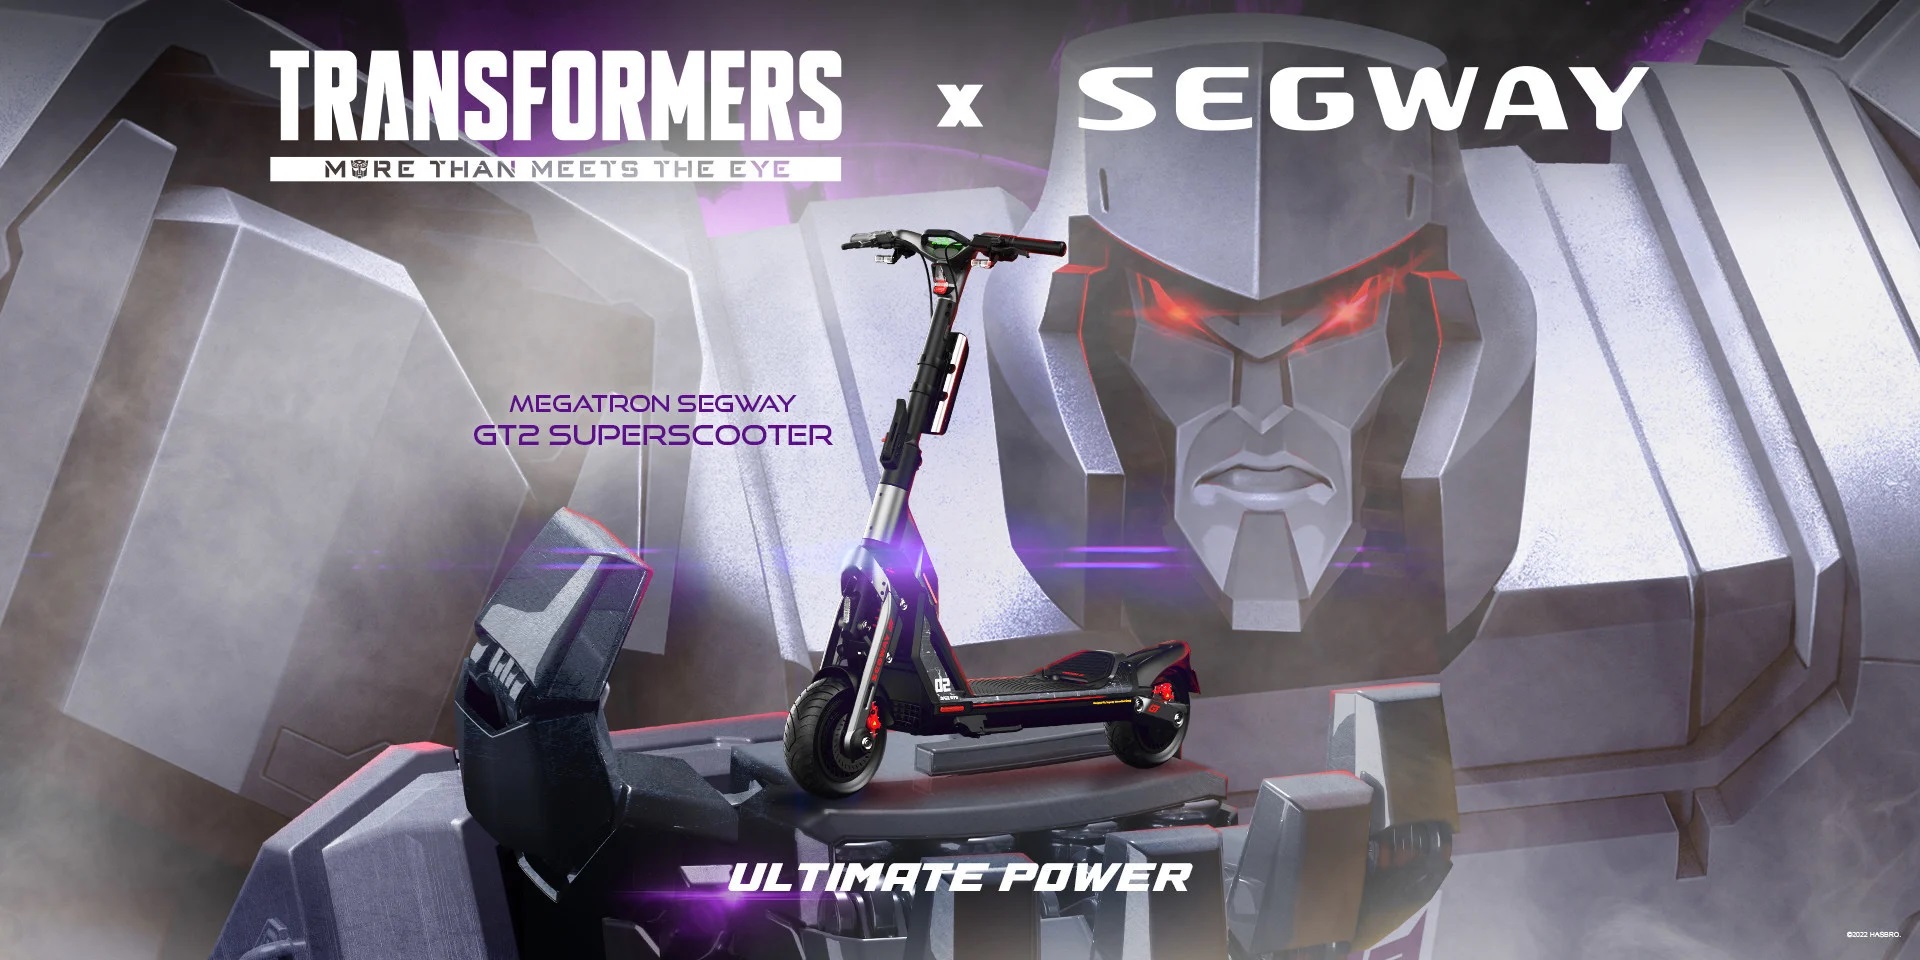 Segway-Ninebot und Hasbro veröffentlichen eine limitierte Auflage von Transformers-Gokarts und E-Scootern 